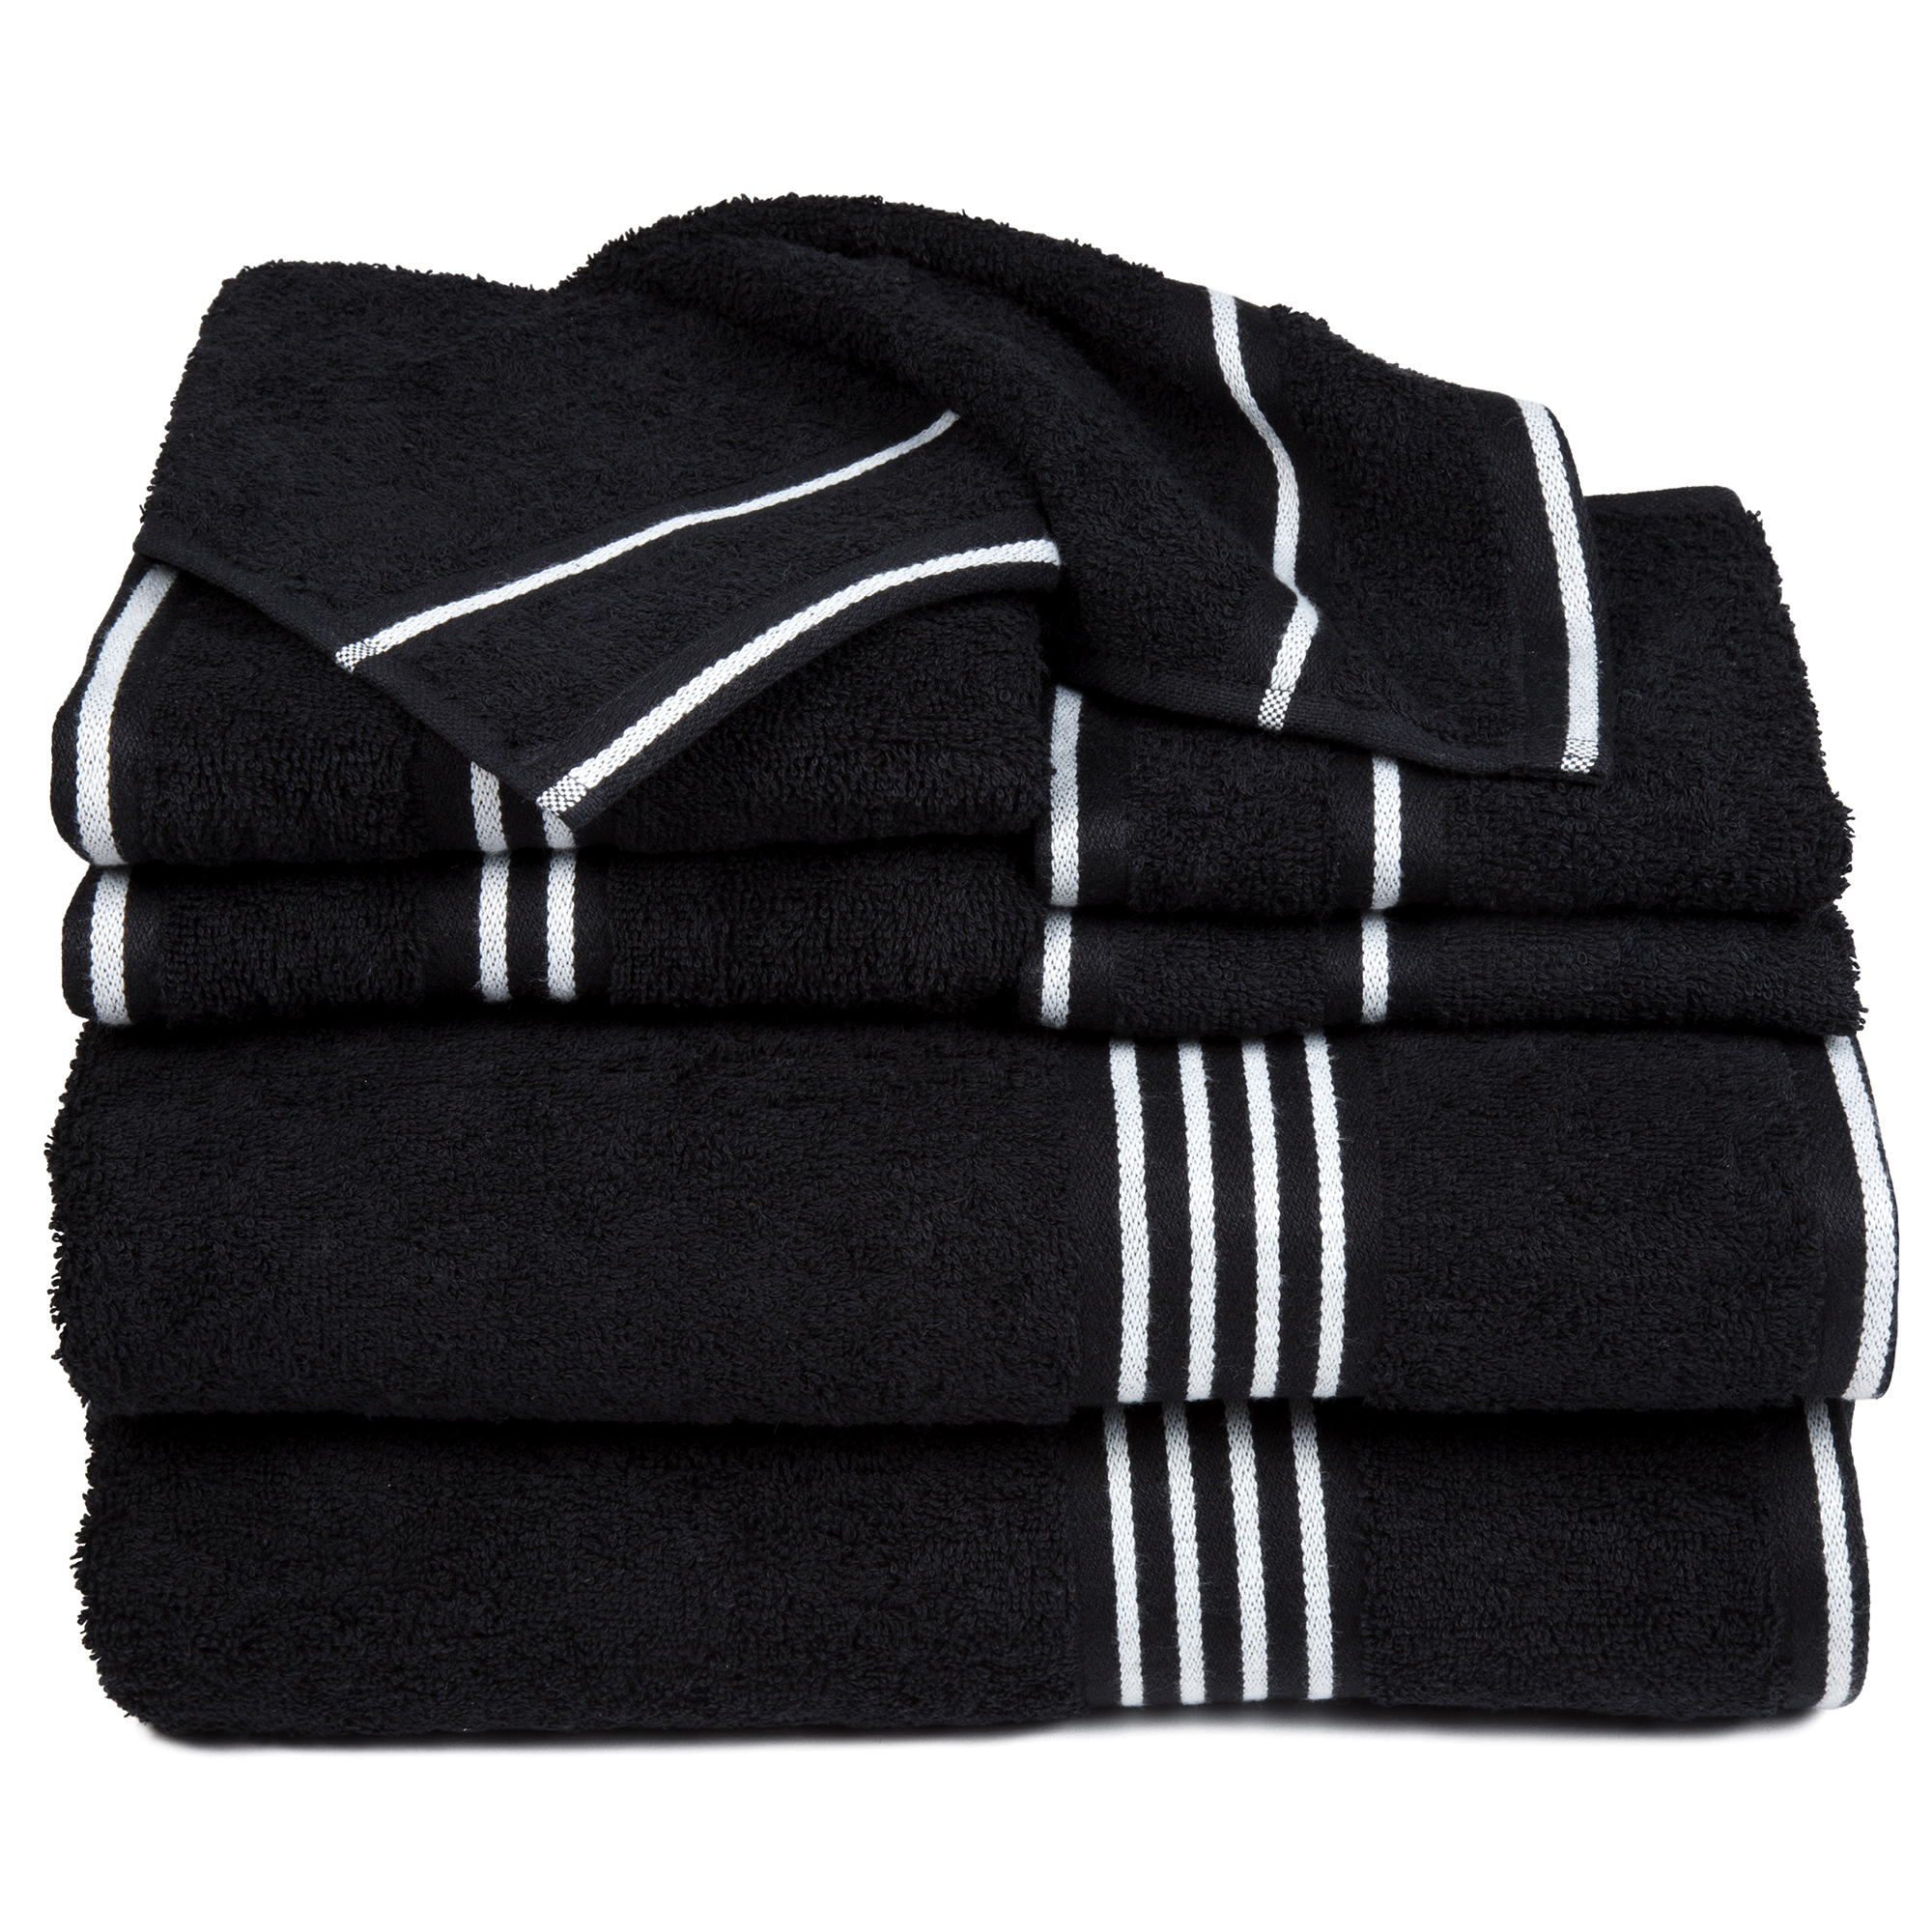 8 Piece 100% Cotton Soft Towel Set - Black